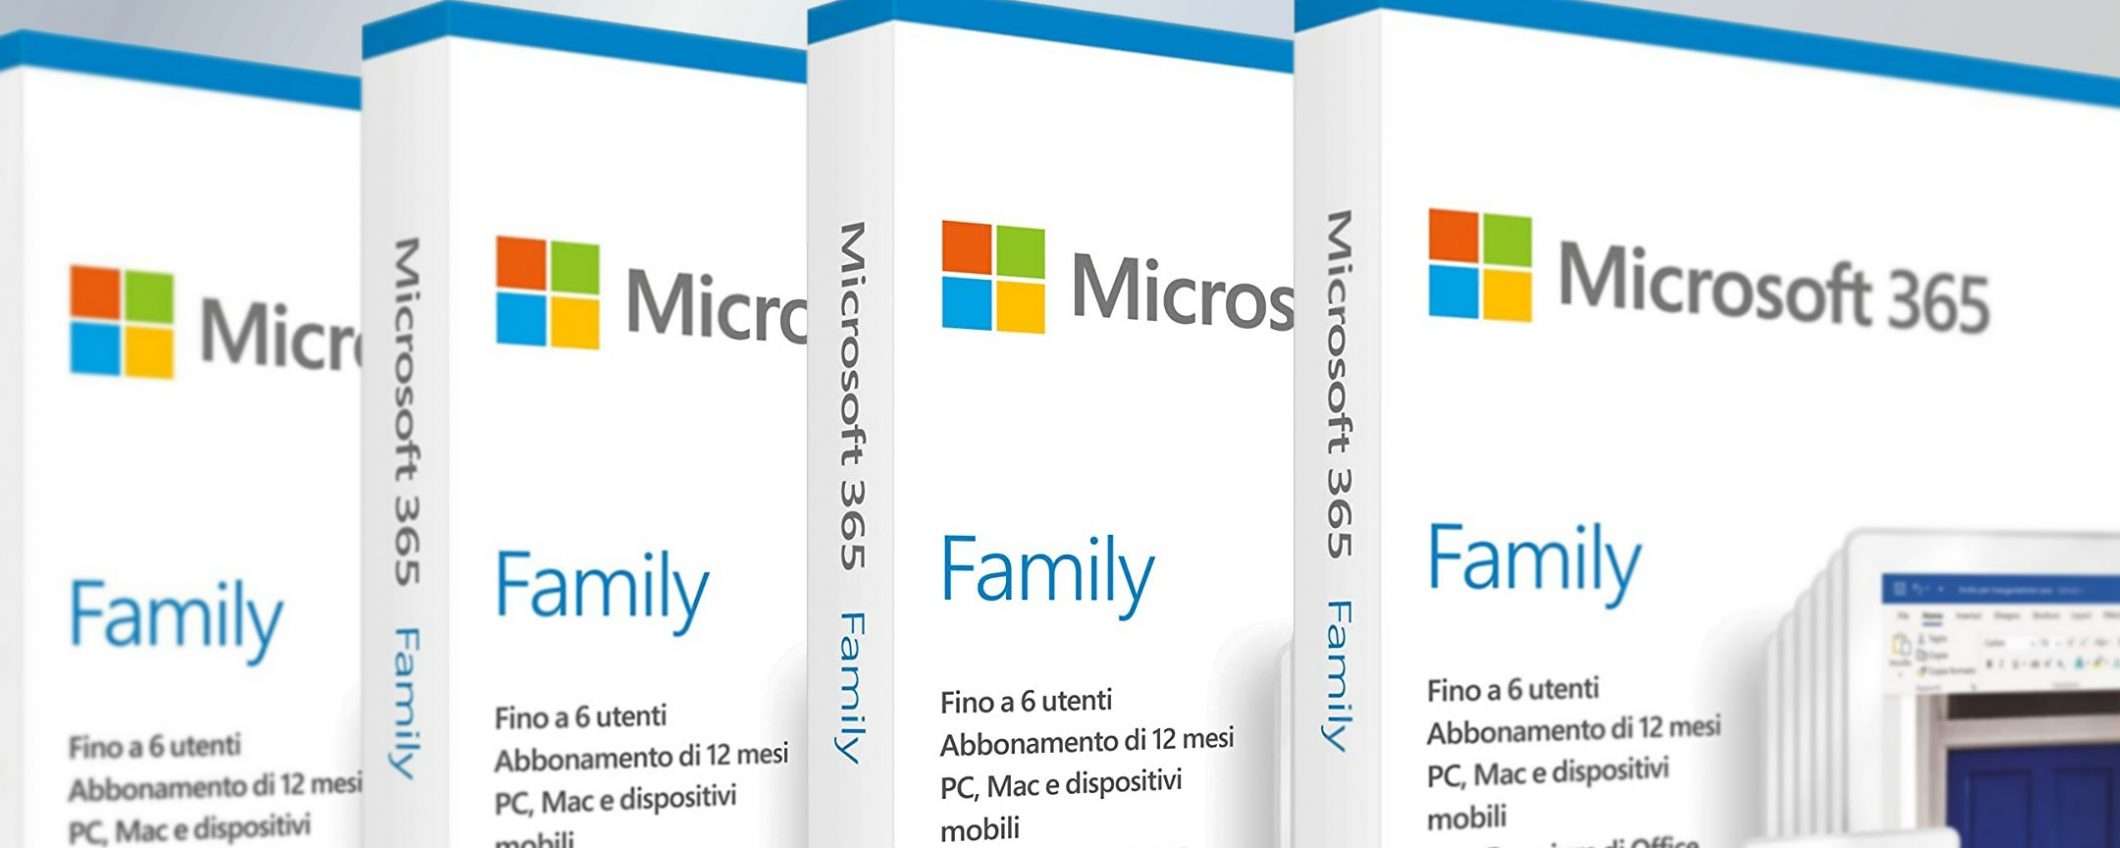 Microsoft 365: l'abbonamento Family oggi in sconto